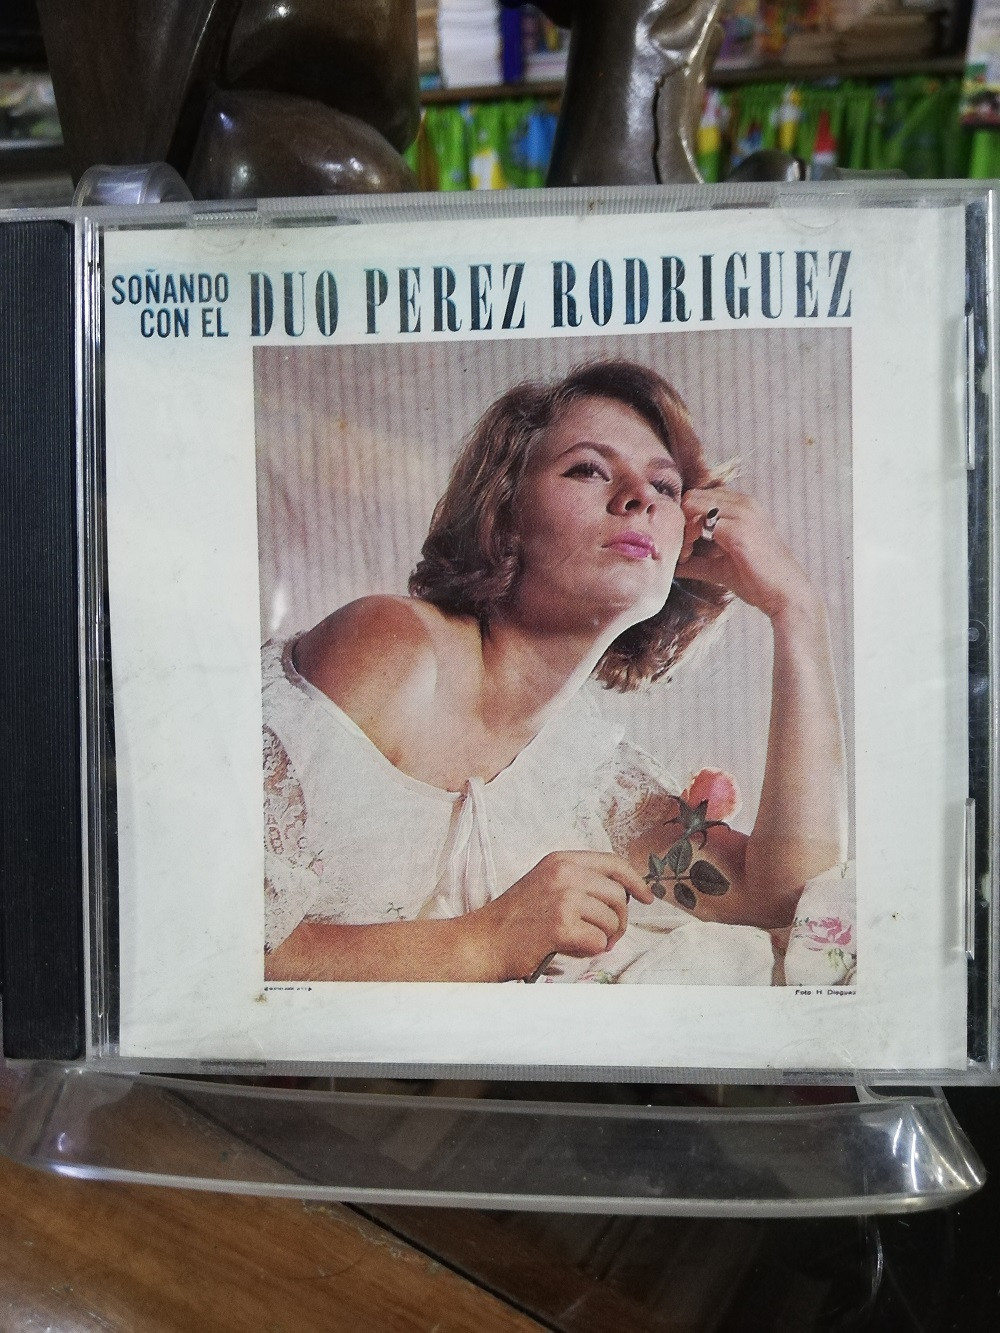 Imagen CD DUO PEREZ RODRIGUEZ - SOÑANDO CON EL DUO PEREZ RODRIGUEZ